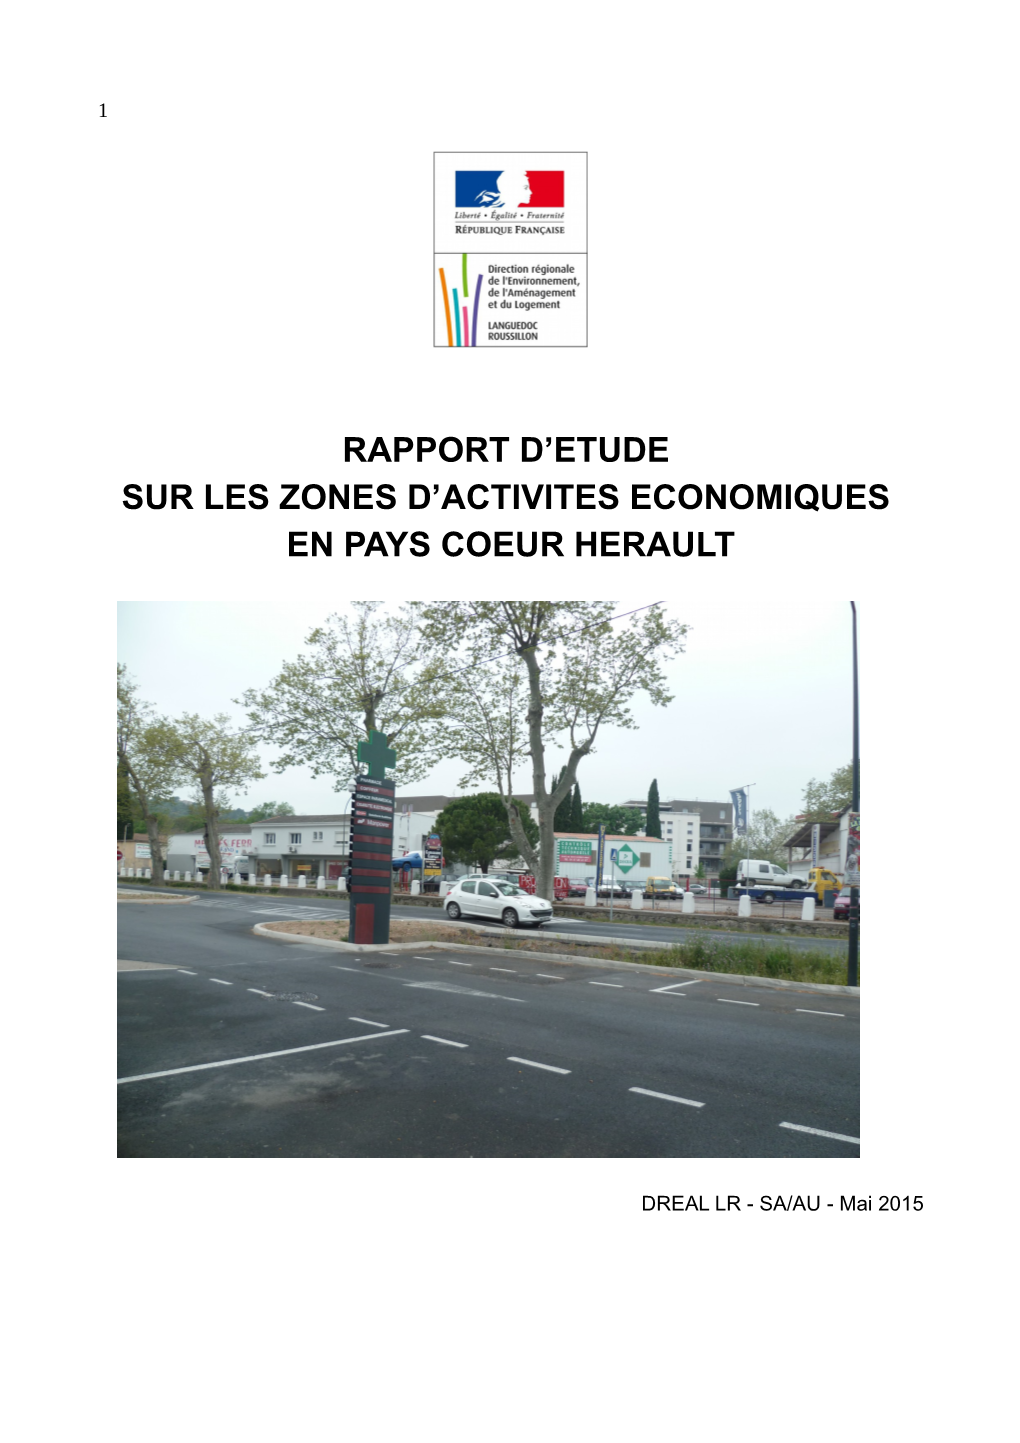 Rapport D'etude Sur Les Zones D'activites Economiques En Pays Coeur Herault